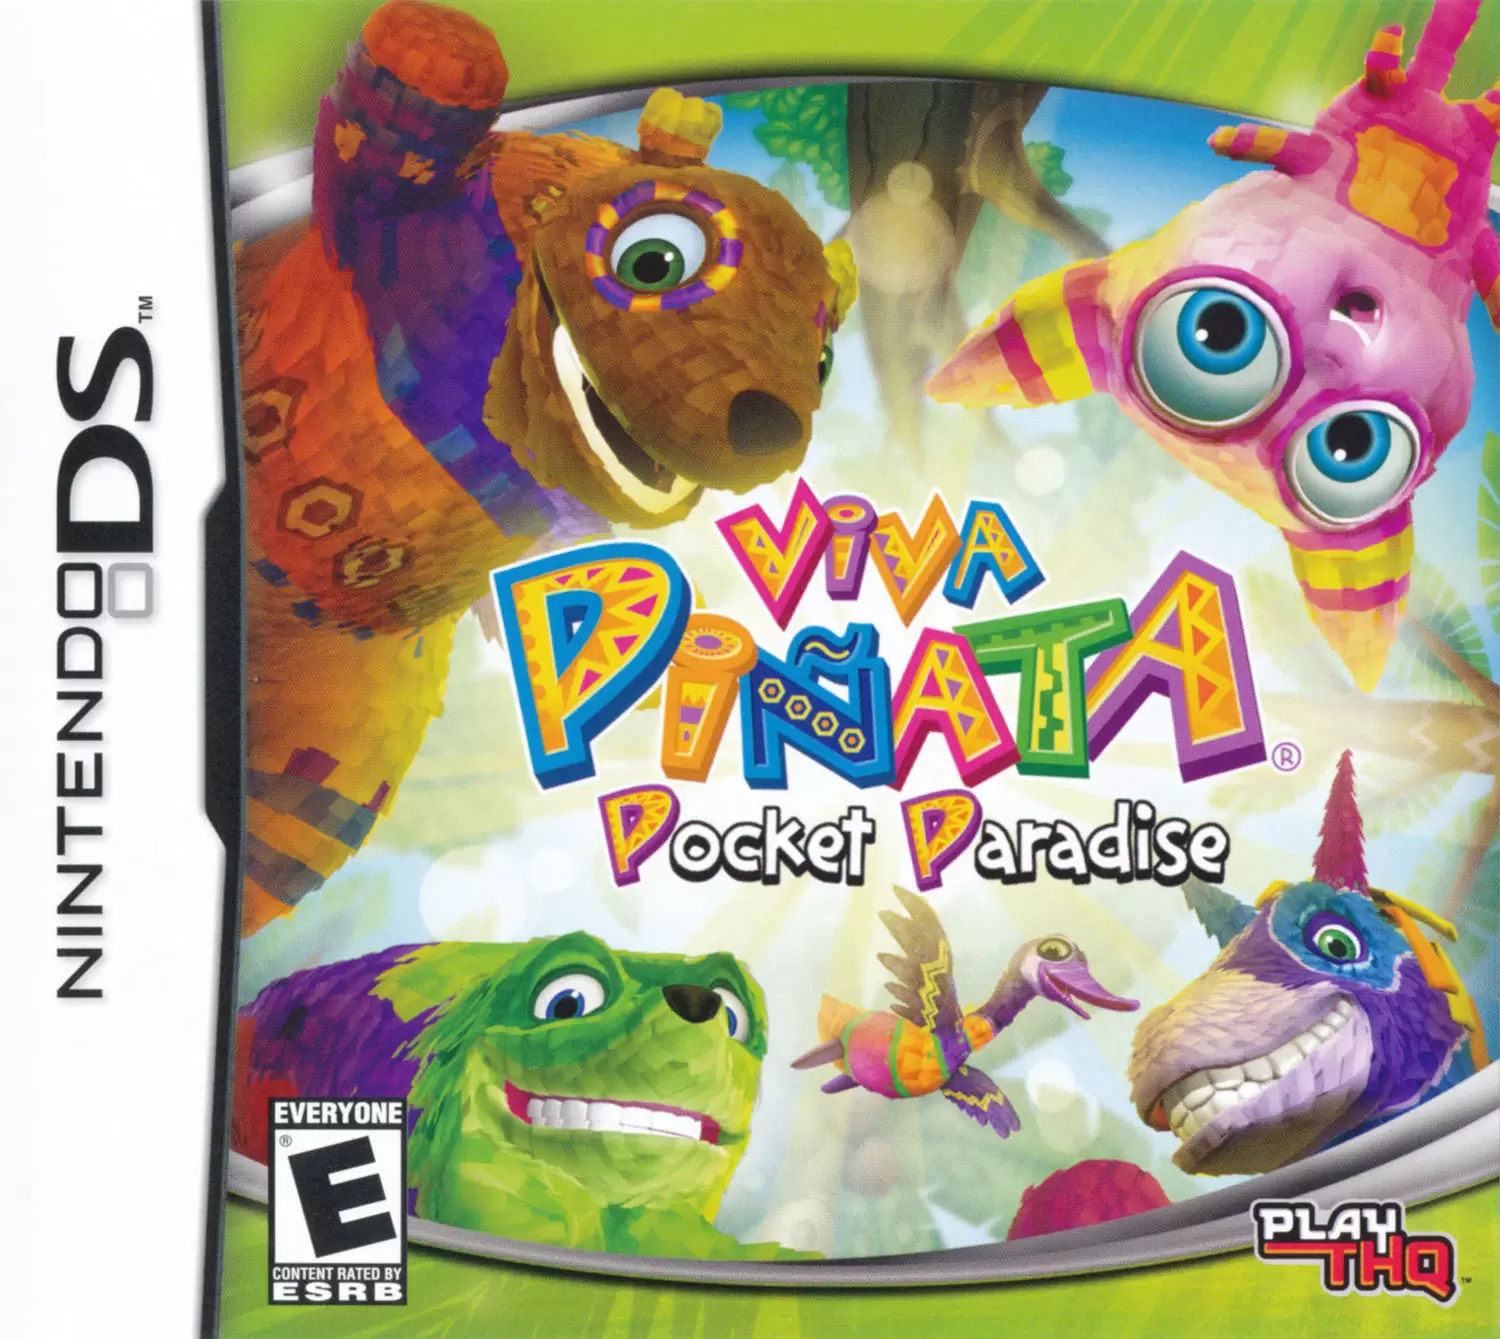 Jeux Nintendo DS - Viva Piñata: Pocket Paradise